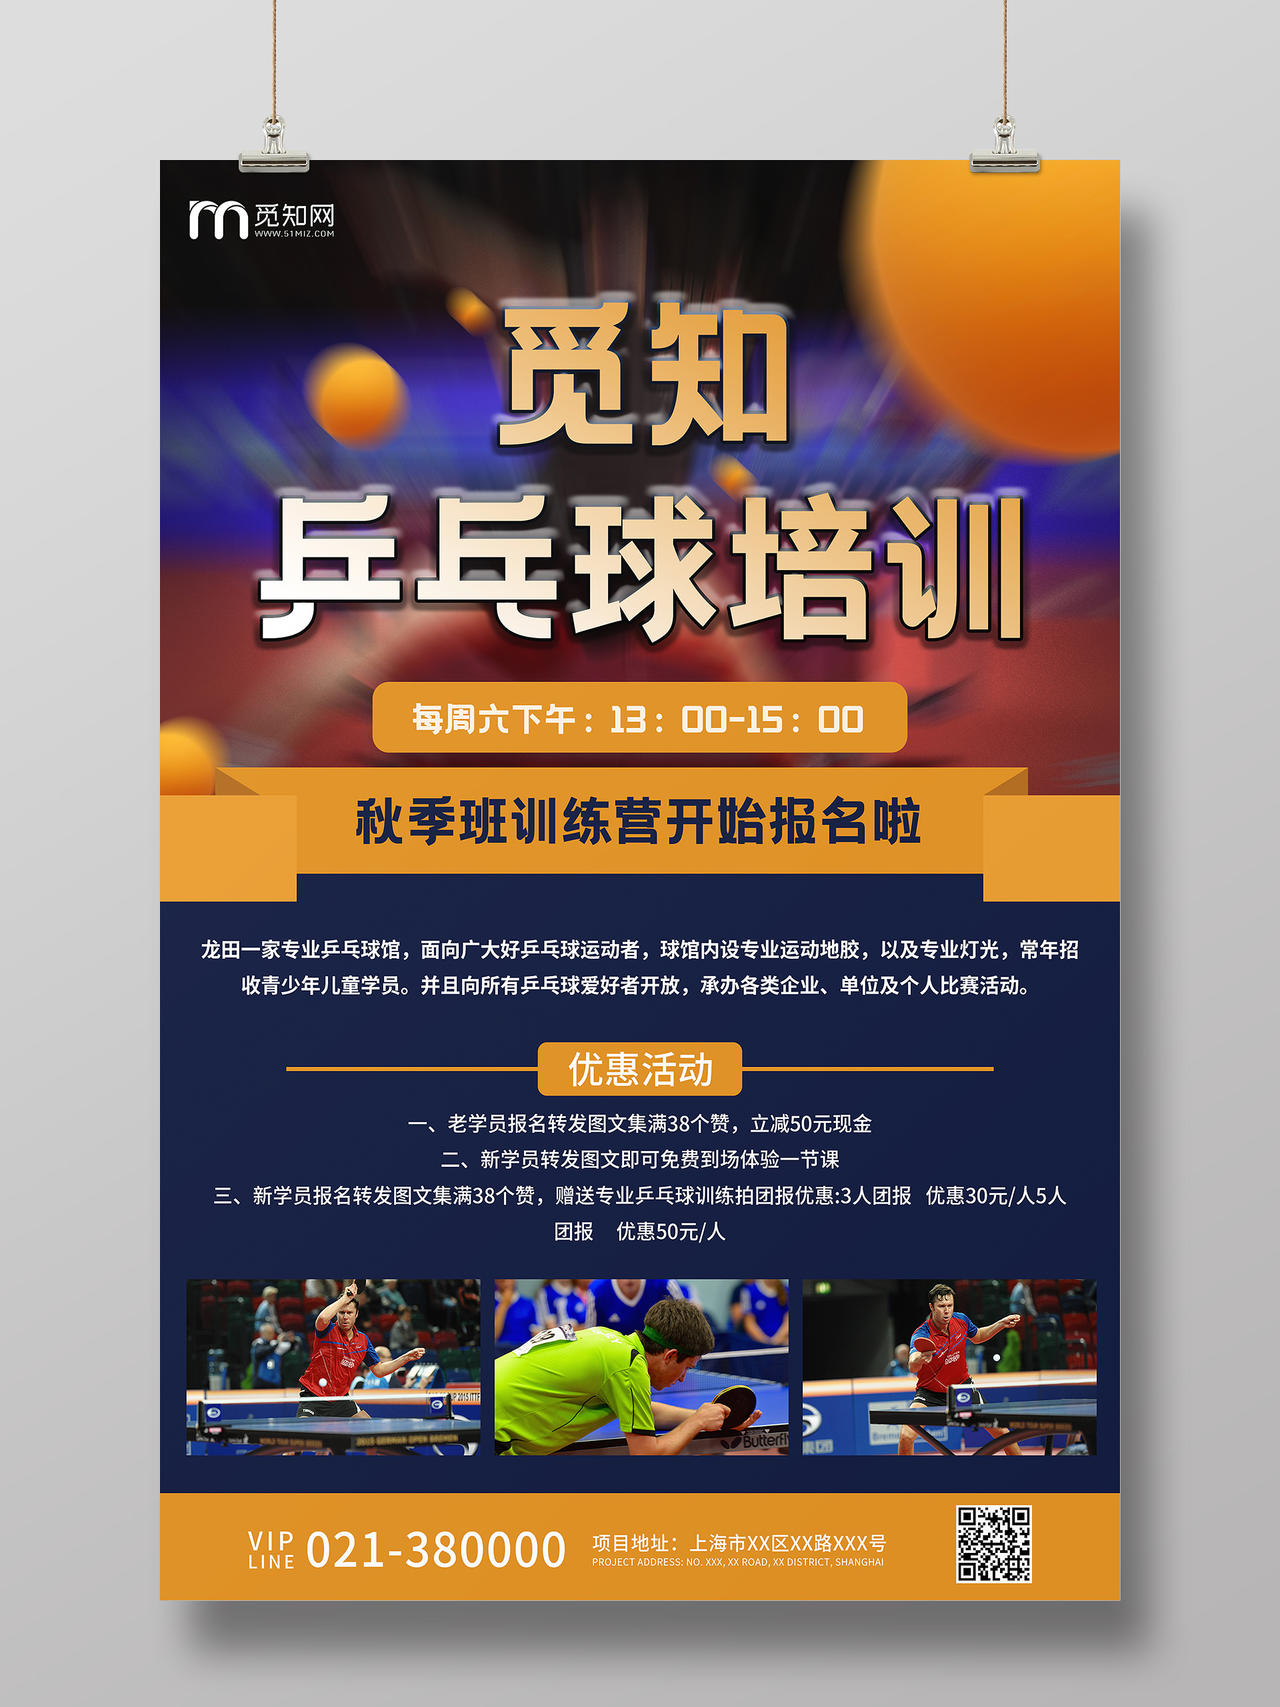 黄黑色简约乒乓球培训宣传招生海报乒乓球招生